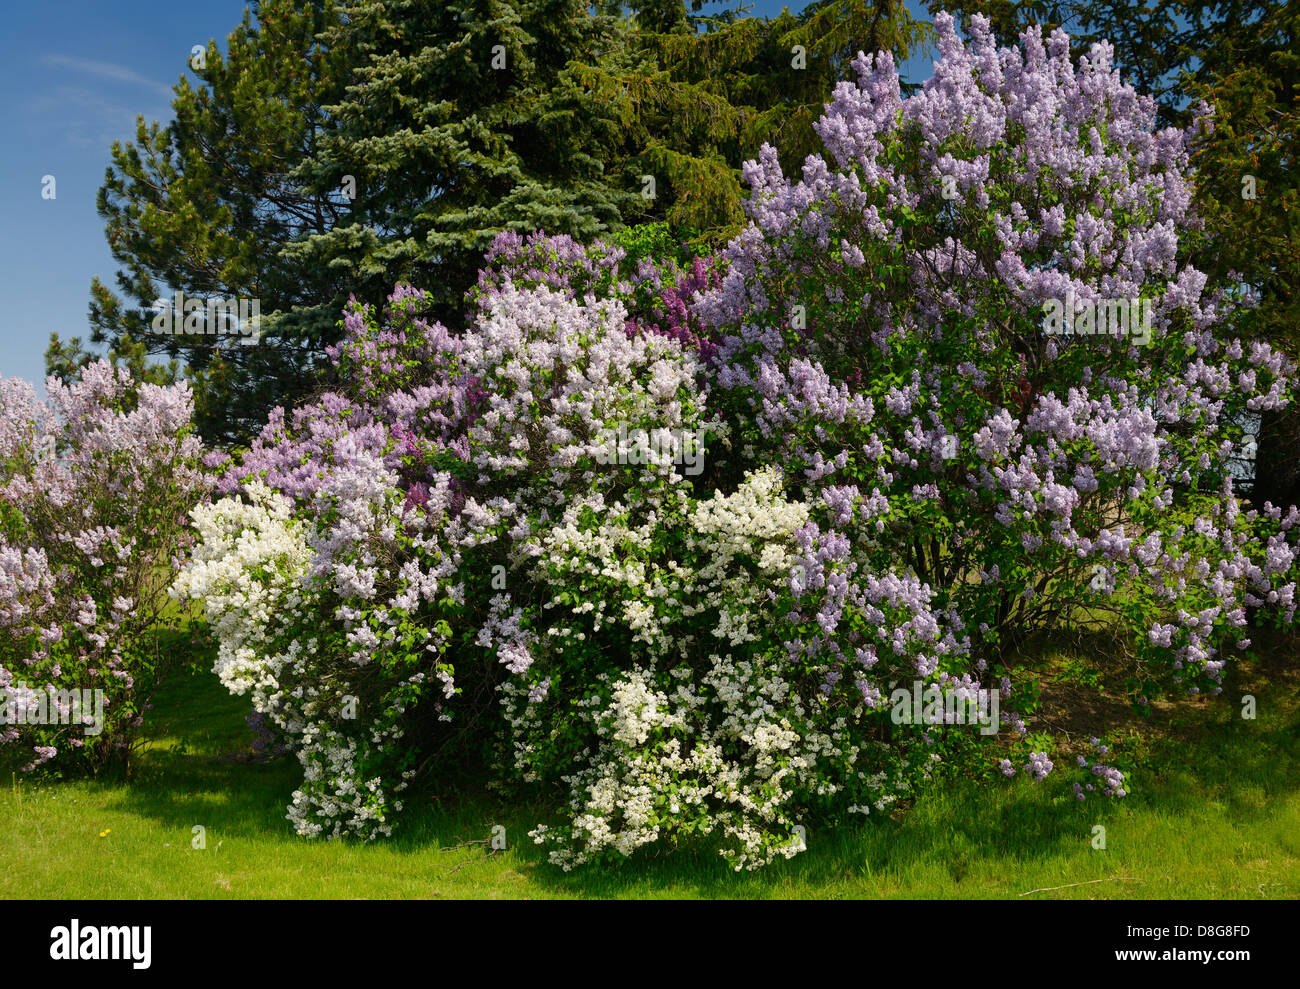 Naturalizado florecientes arbustos de lilas común al lado de abetos en la primavera de Toronto, Canadá Foto de stock